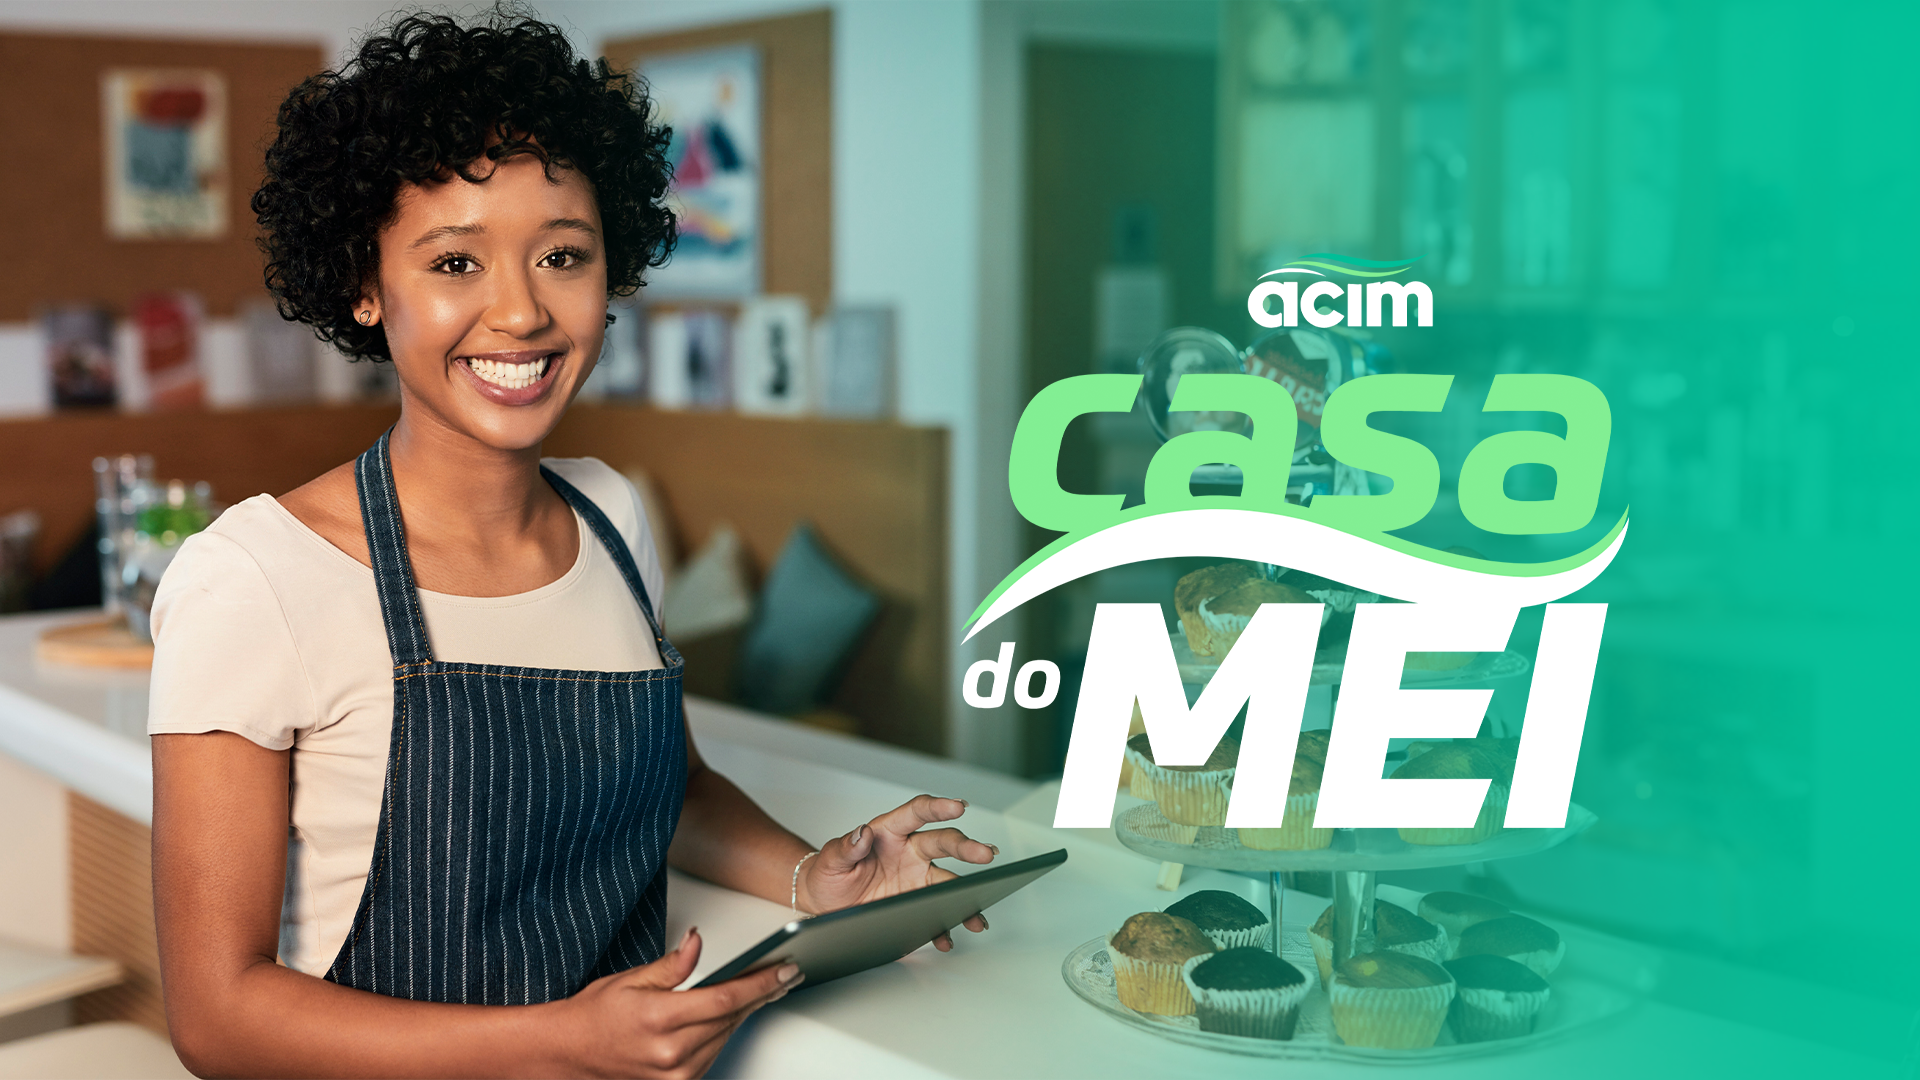 Na Casa do MEI, microempreendedores individuais terão atendimento personalizado na ACIM